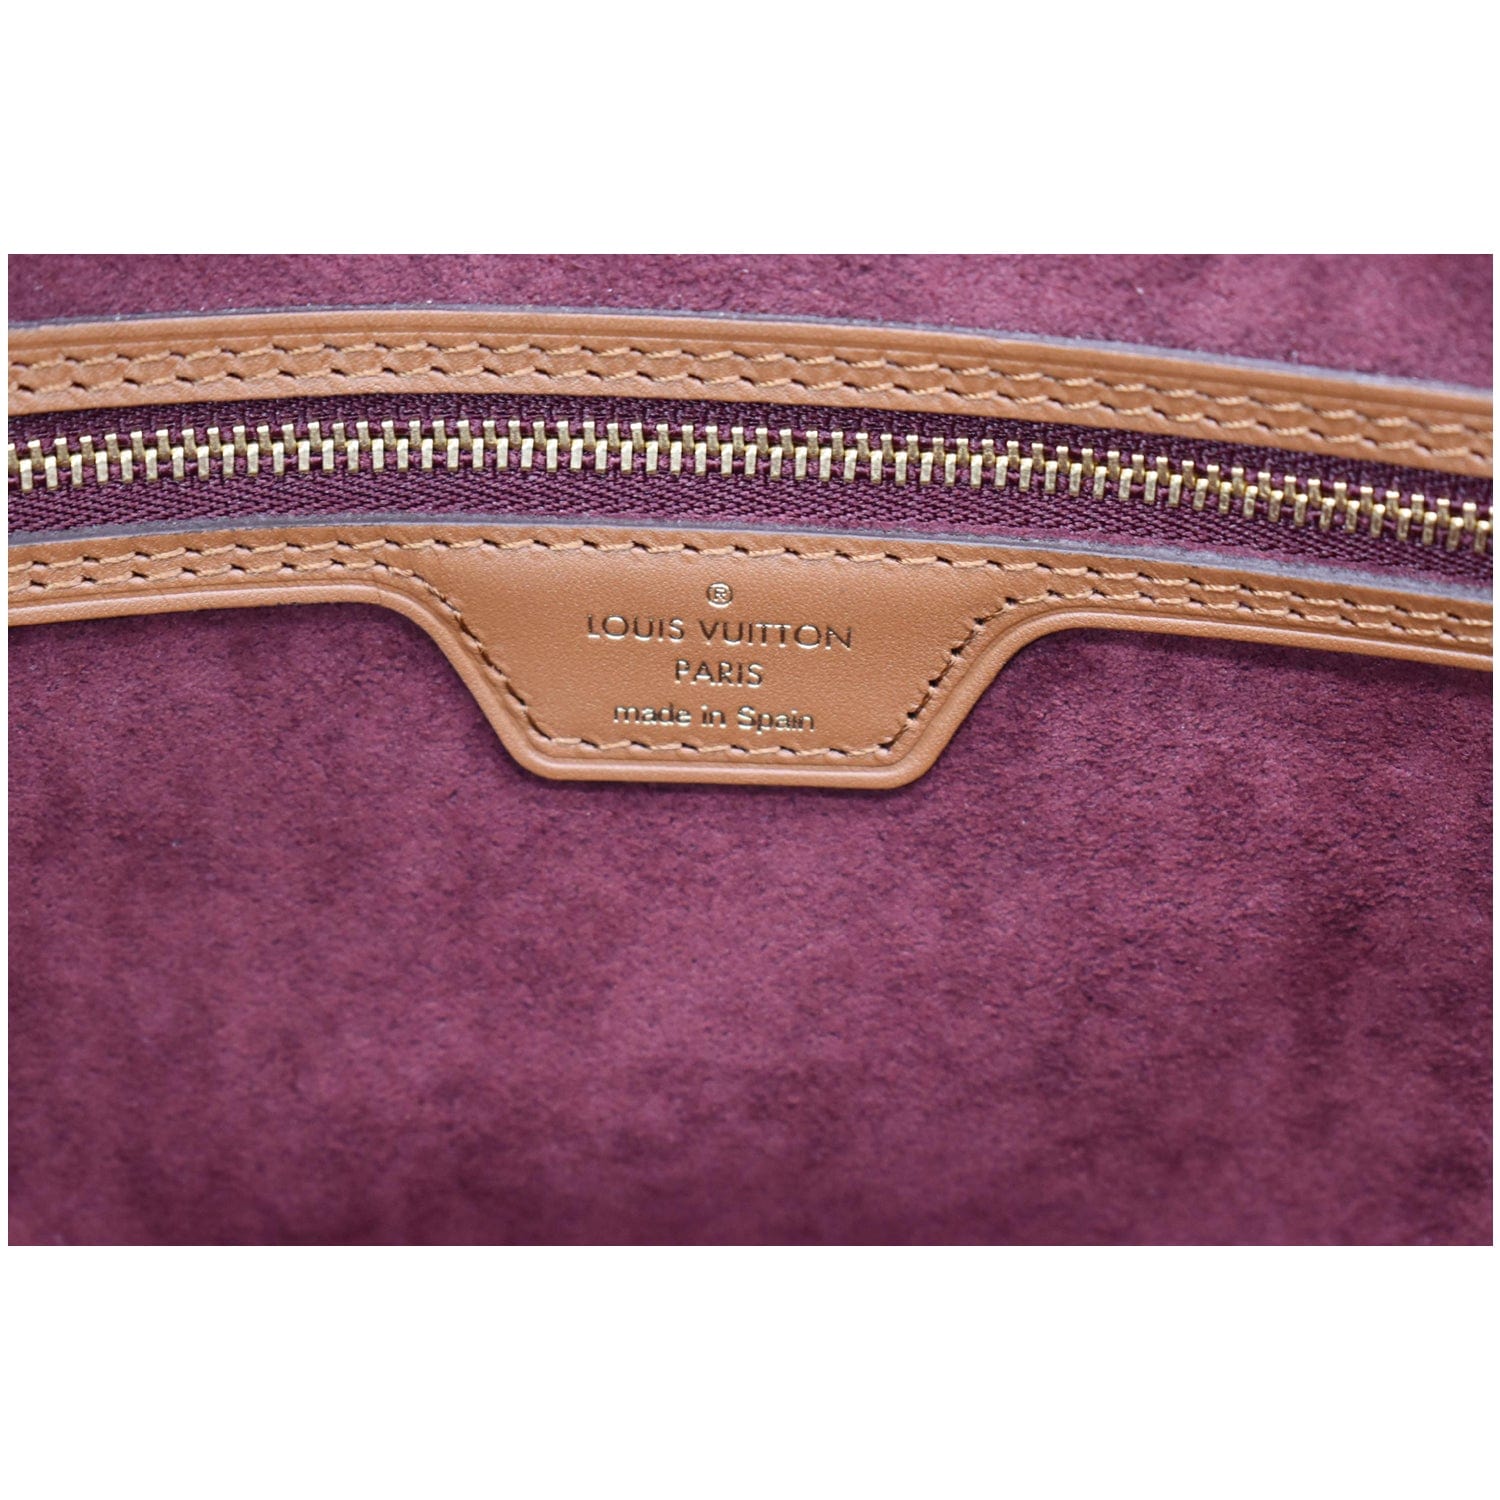 Louis Vuitton Bordeaux Monogram Since 1854 Neverfull Pochette mm or GM 22lz53s